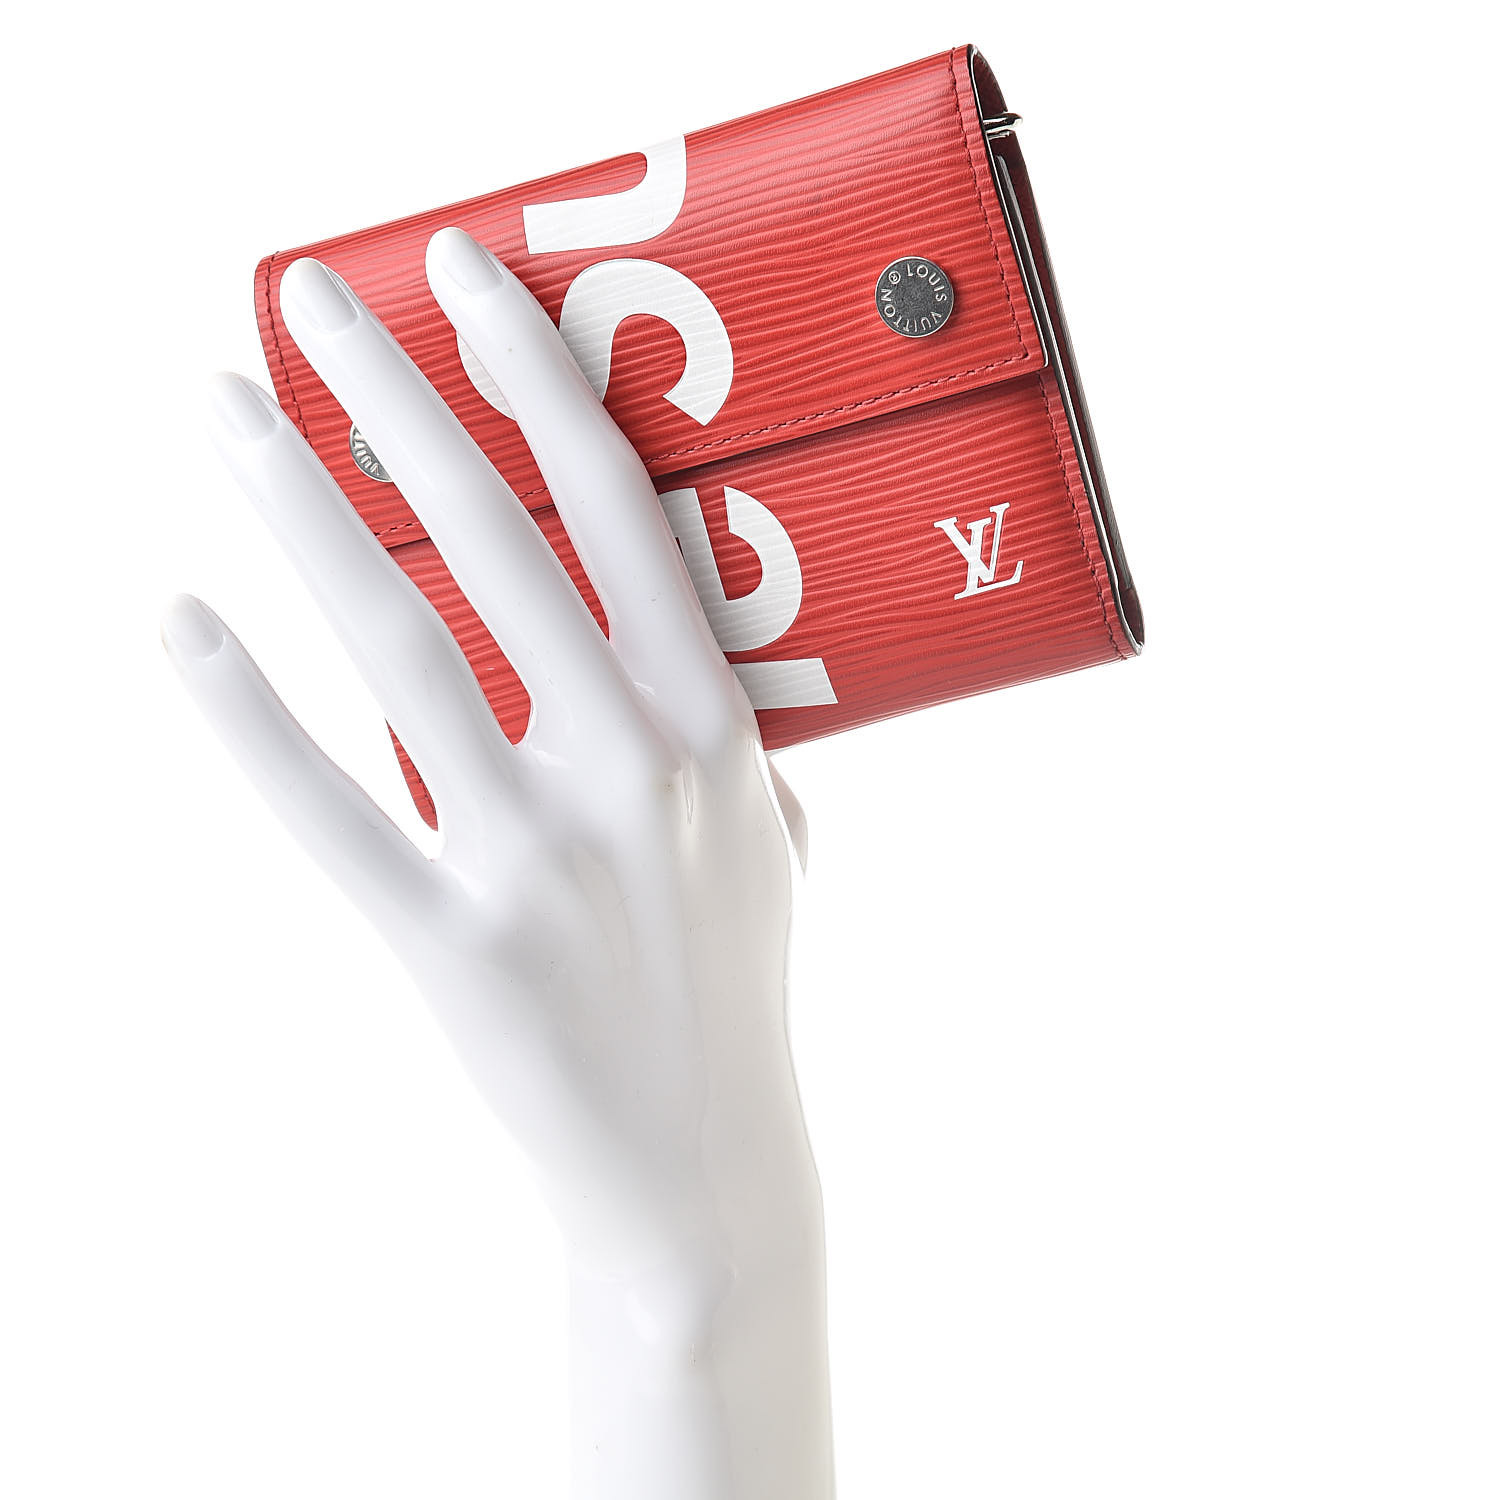 Louis Vuitton x Supreme Brazza Wallet Epi Red